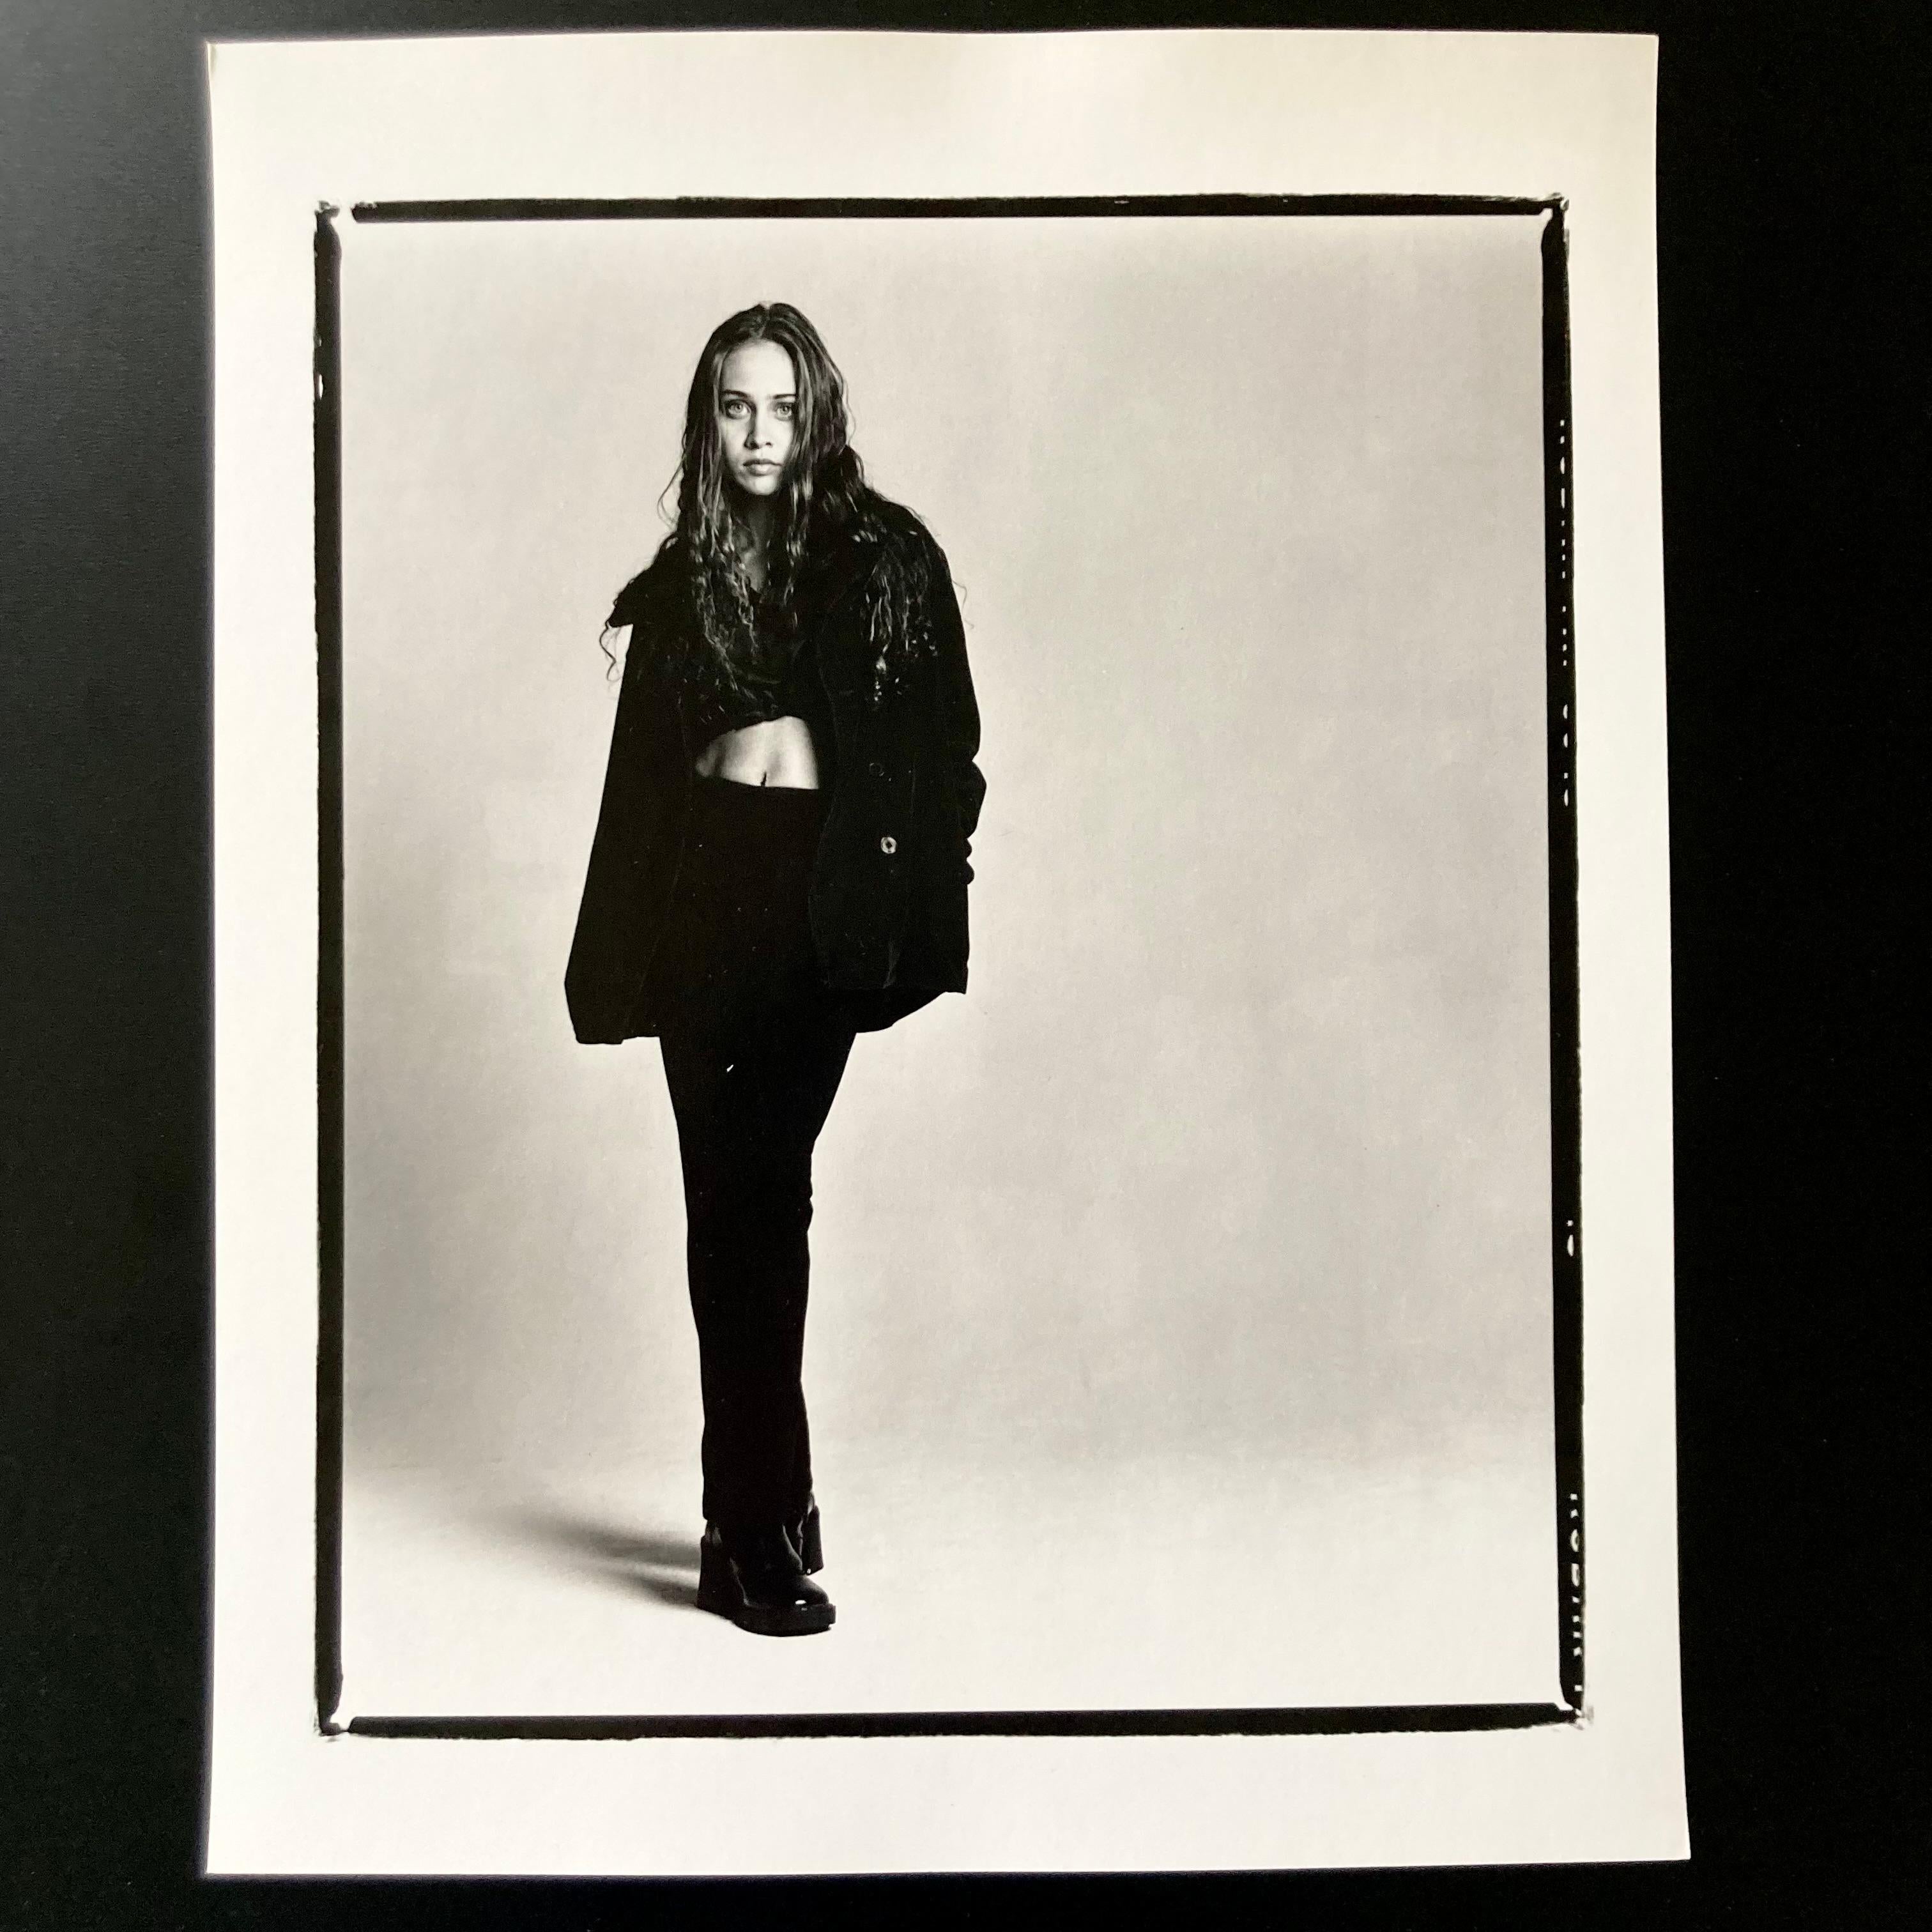 Sängerin Fiona Apple, 8 "x10" Handbedruckter Dunkelkammerabzug, der zum Zeitpunkt der Aufnahme 1996 erstellt und flach in einer temperaturkontrollierten Umgebung gelagert wurde.

Der Druck ist in einwandfreiem, neuem Zustand ohne Mängel. Auf der